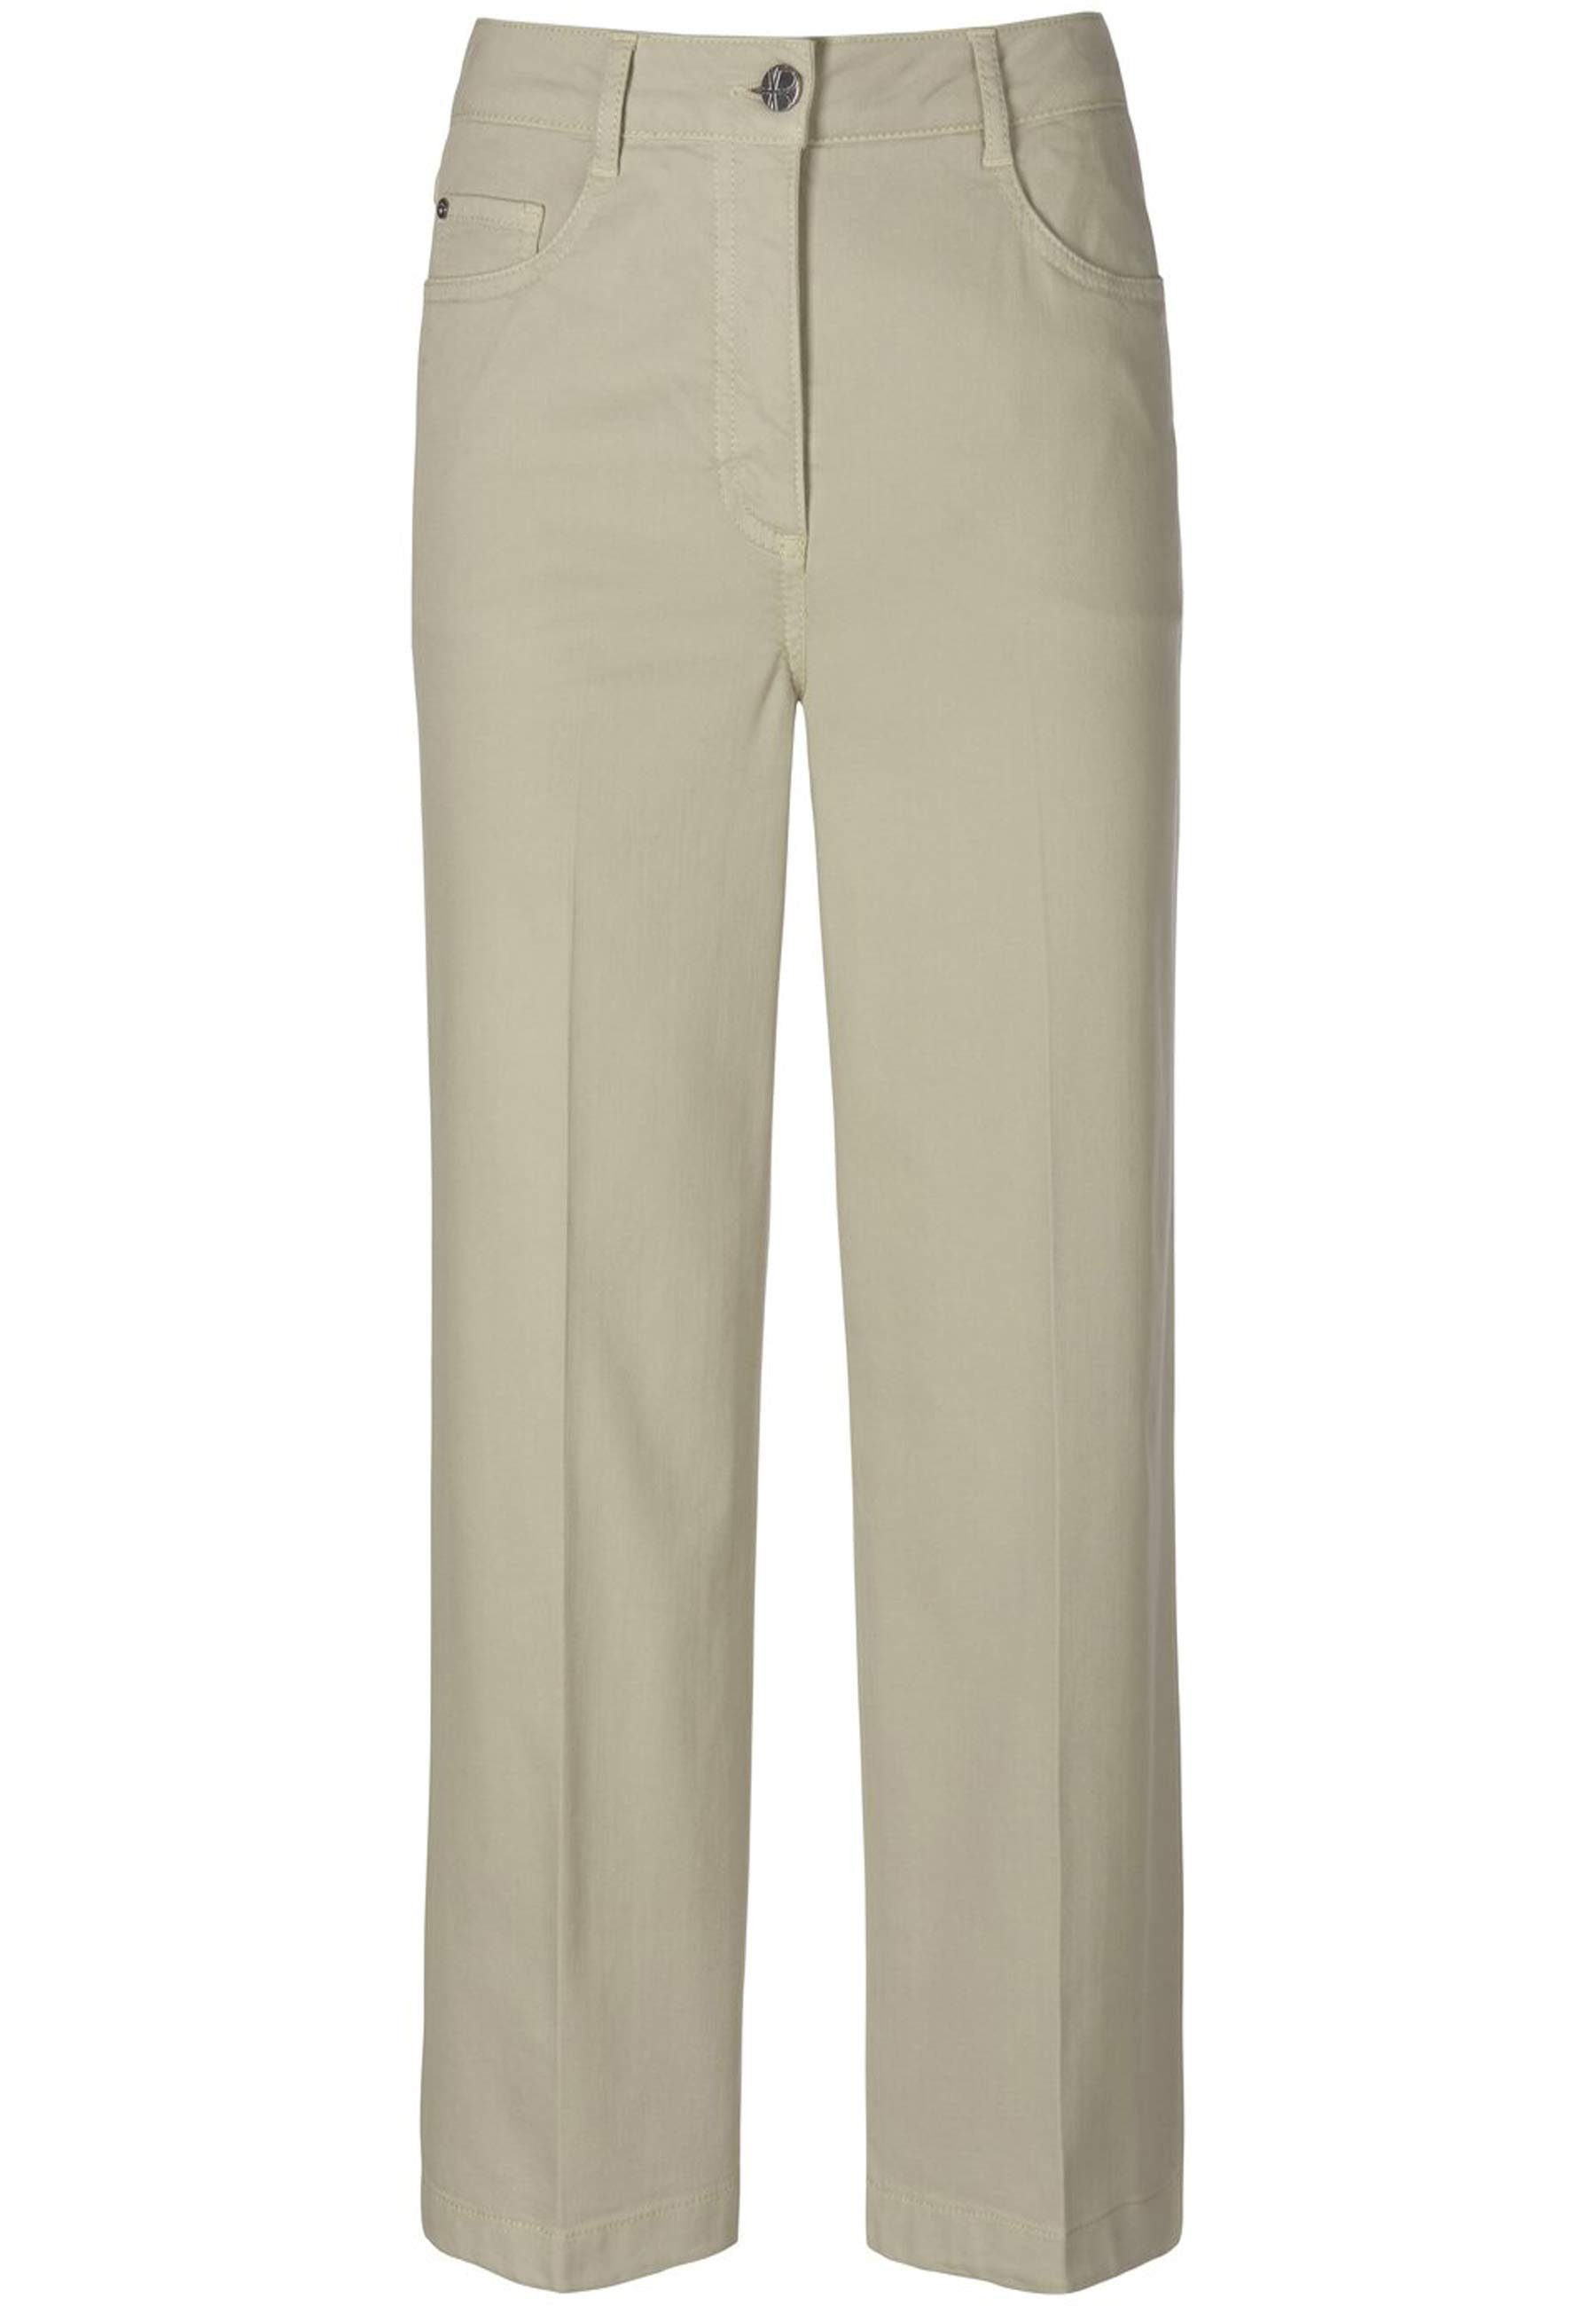 GREEN Cotton klassischem 5-Pocket-Jeans Design mit LICHEN DEEP Basler